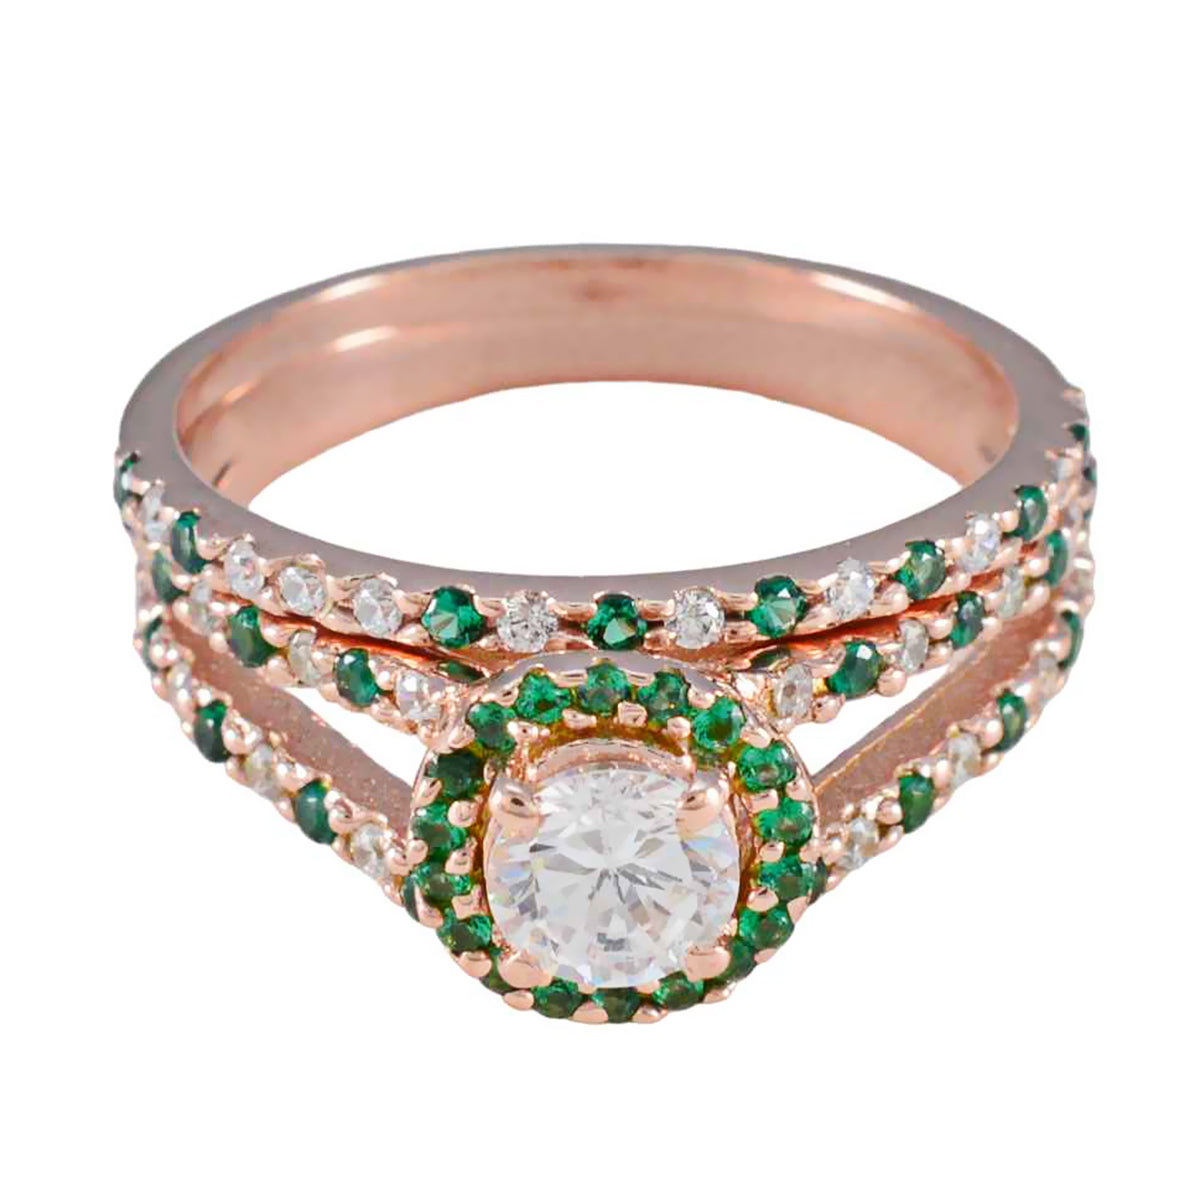 riyo omfattande silverring med roséguldplätering smaragd cz sten rund form stift inställning designer smycken julring